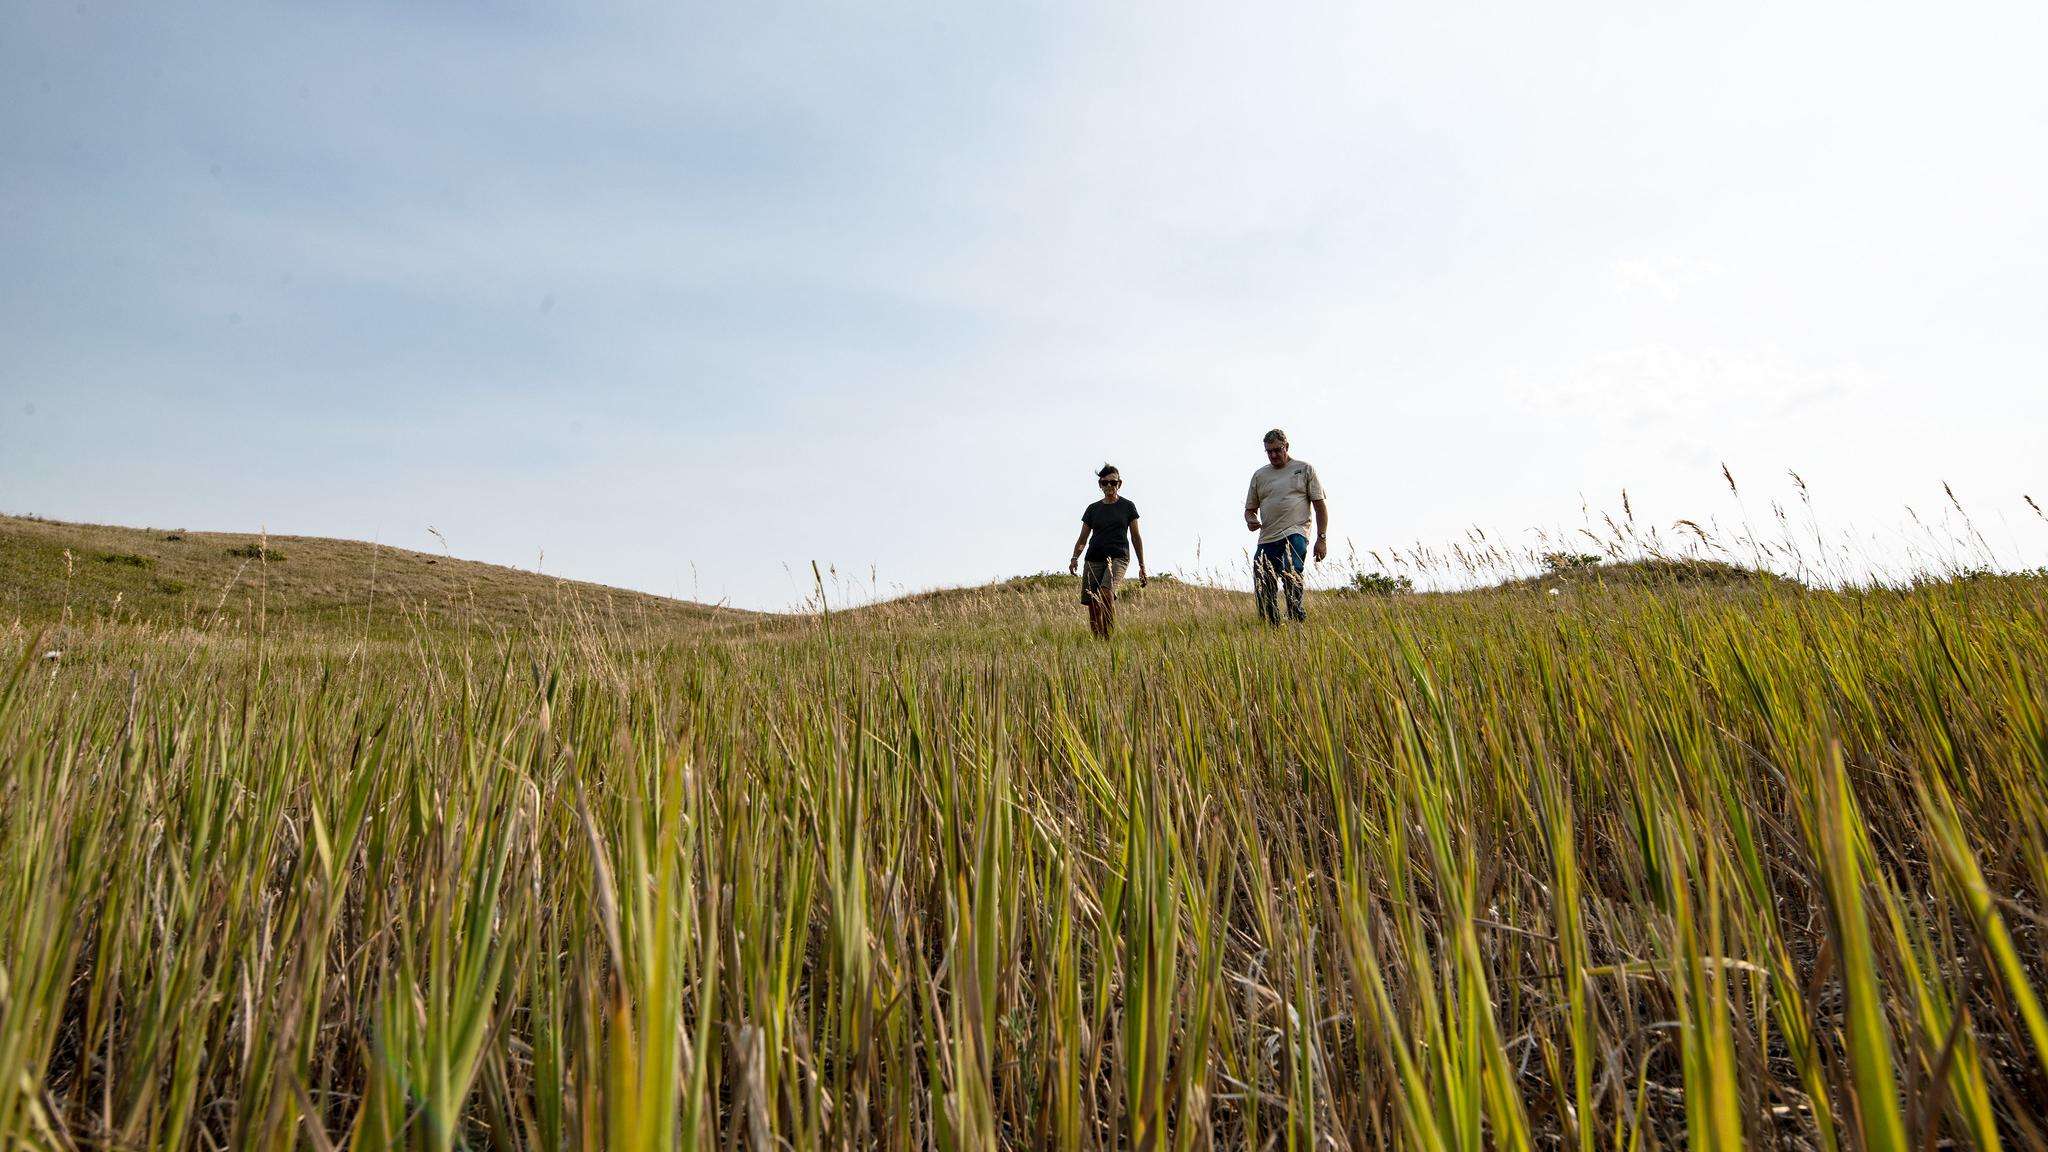 Two people walking across a field of grass.